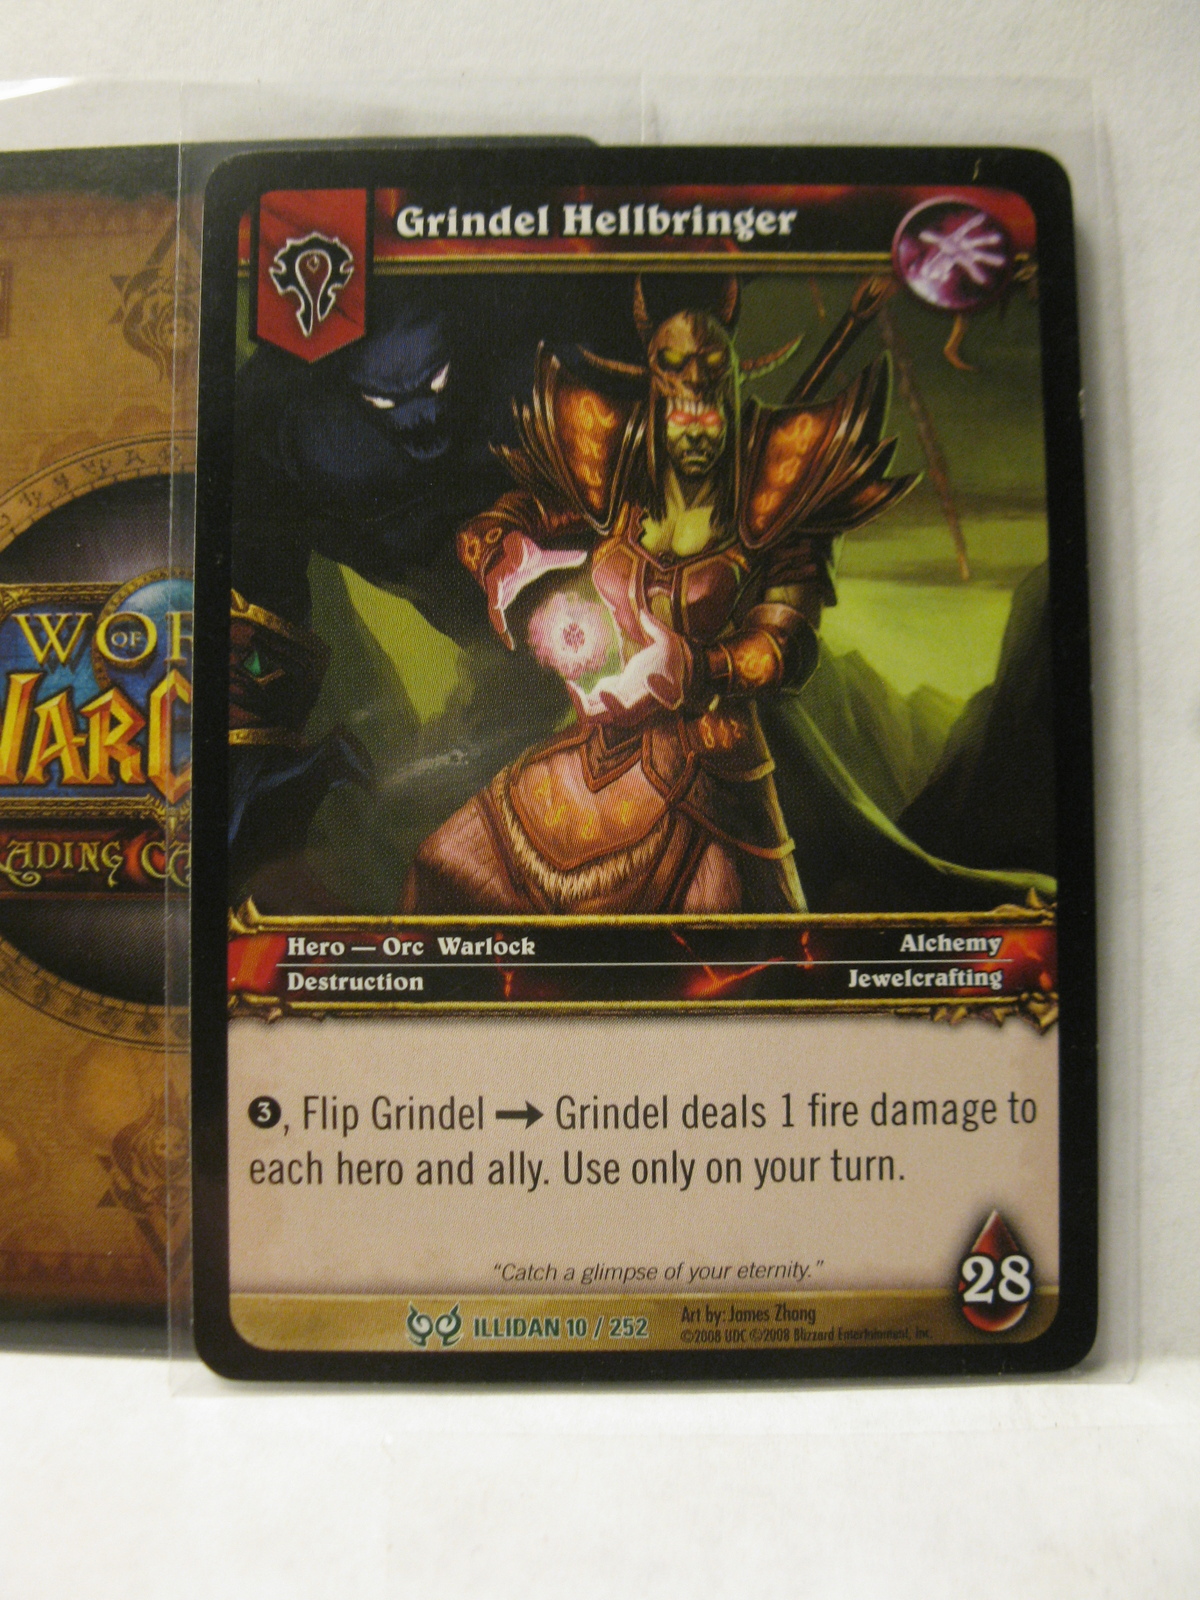 (TC-1571) 2008 World of Warcraft Trading Card #10/252: Grindel Hellbringer - $1.00